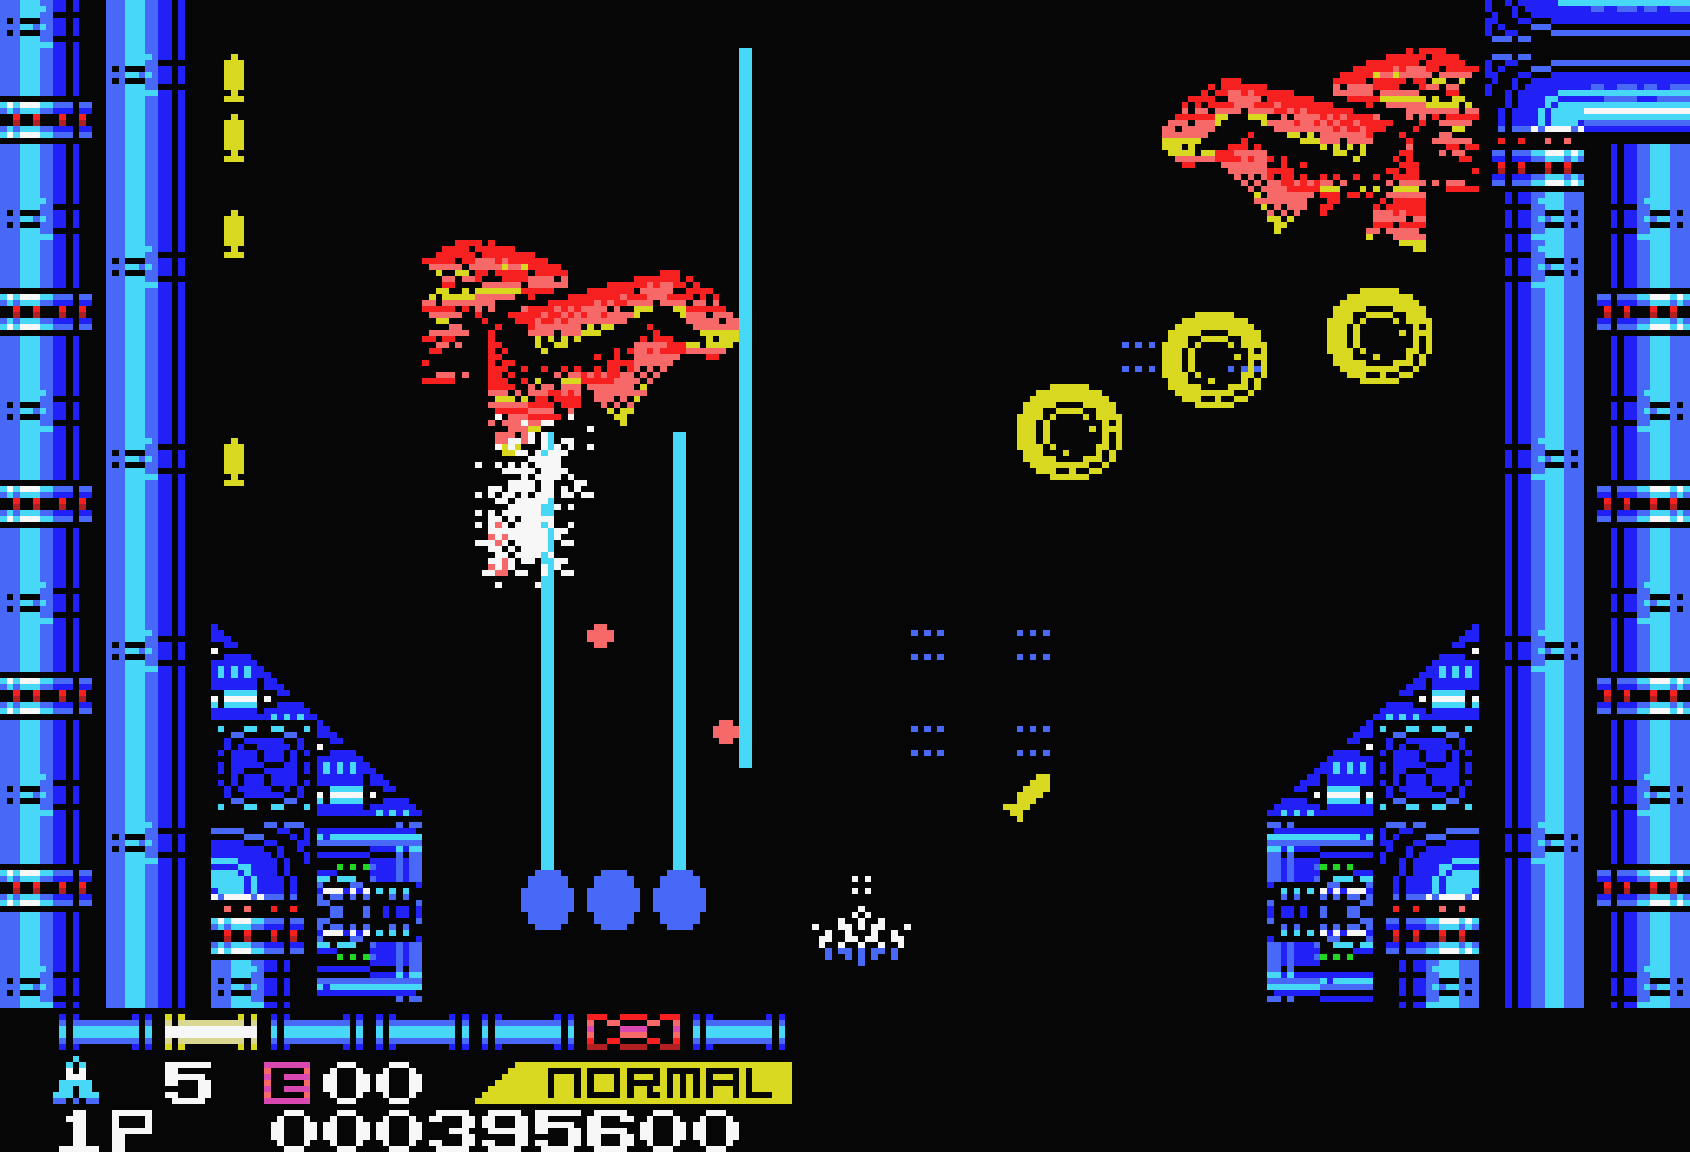 沙羅曼蛇 for MSX (C)1987 コナミ